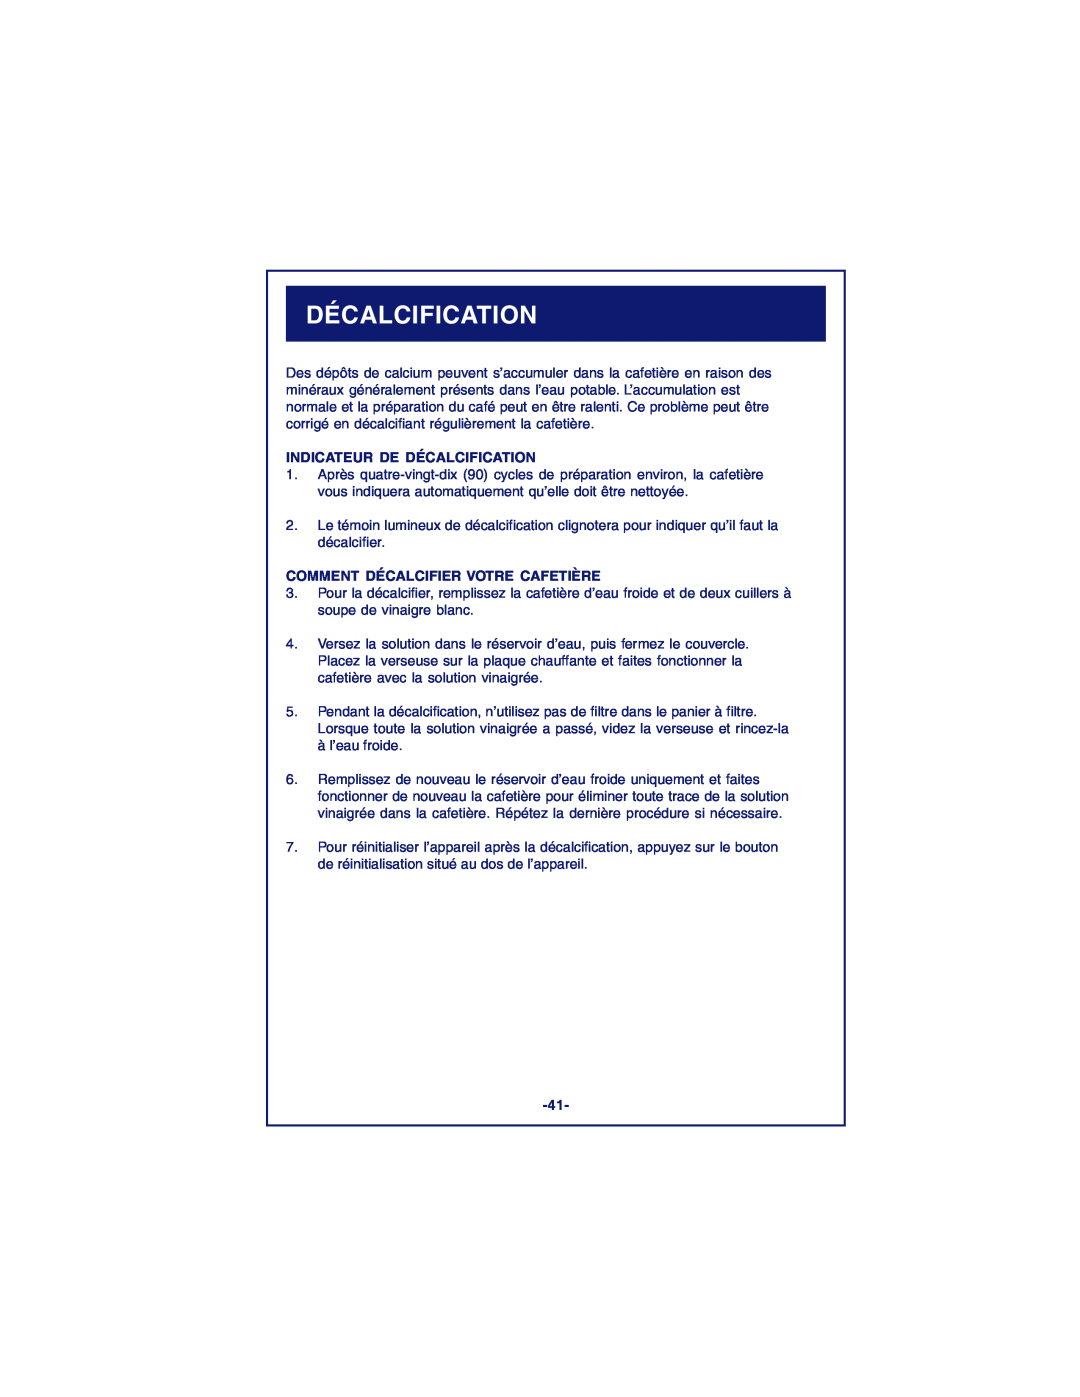 DeLonghi DCM900 instruction manual Indicateur De Décalcification, Comment Décalcifier Votre Cafetière 